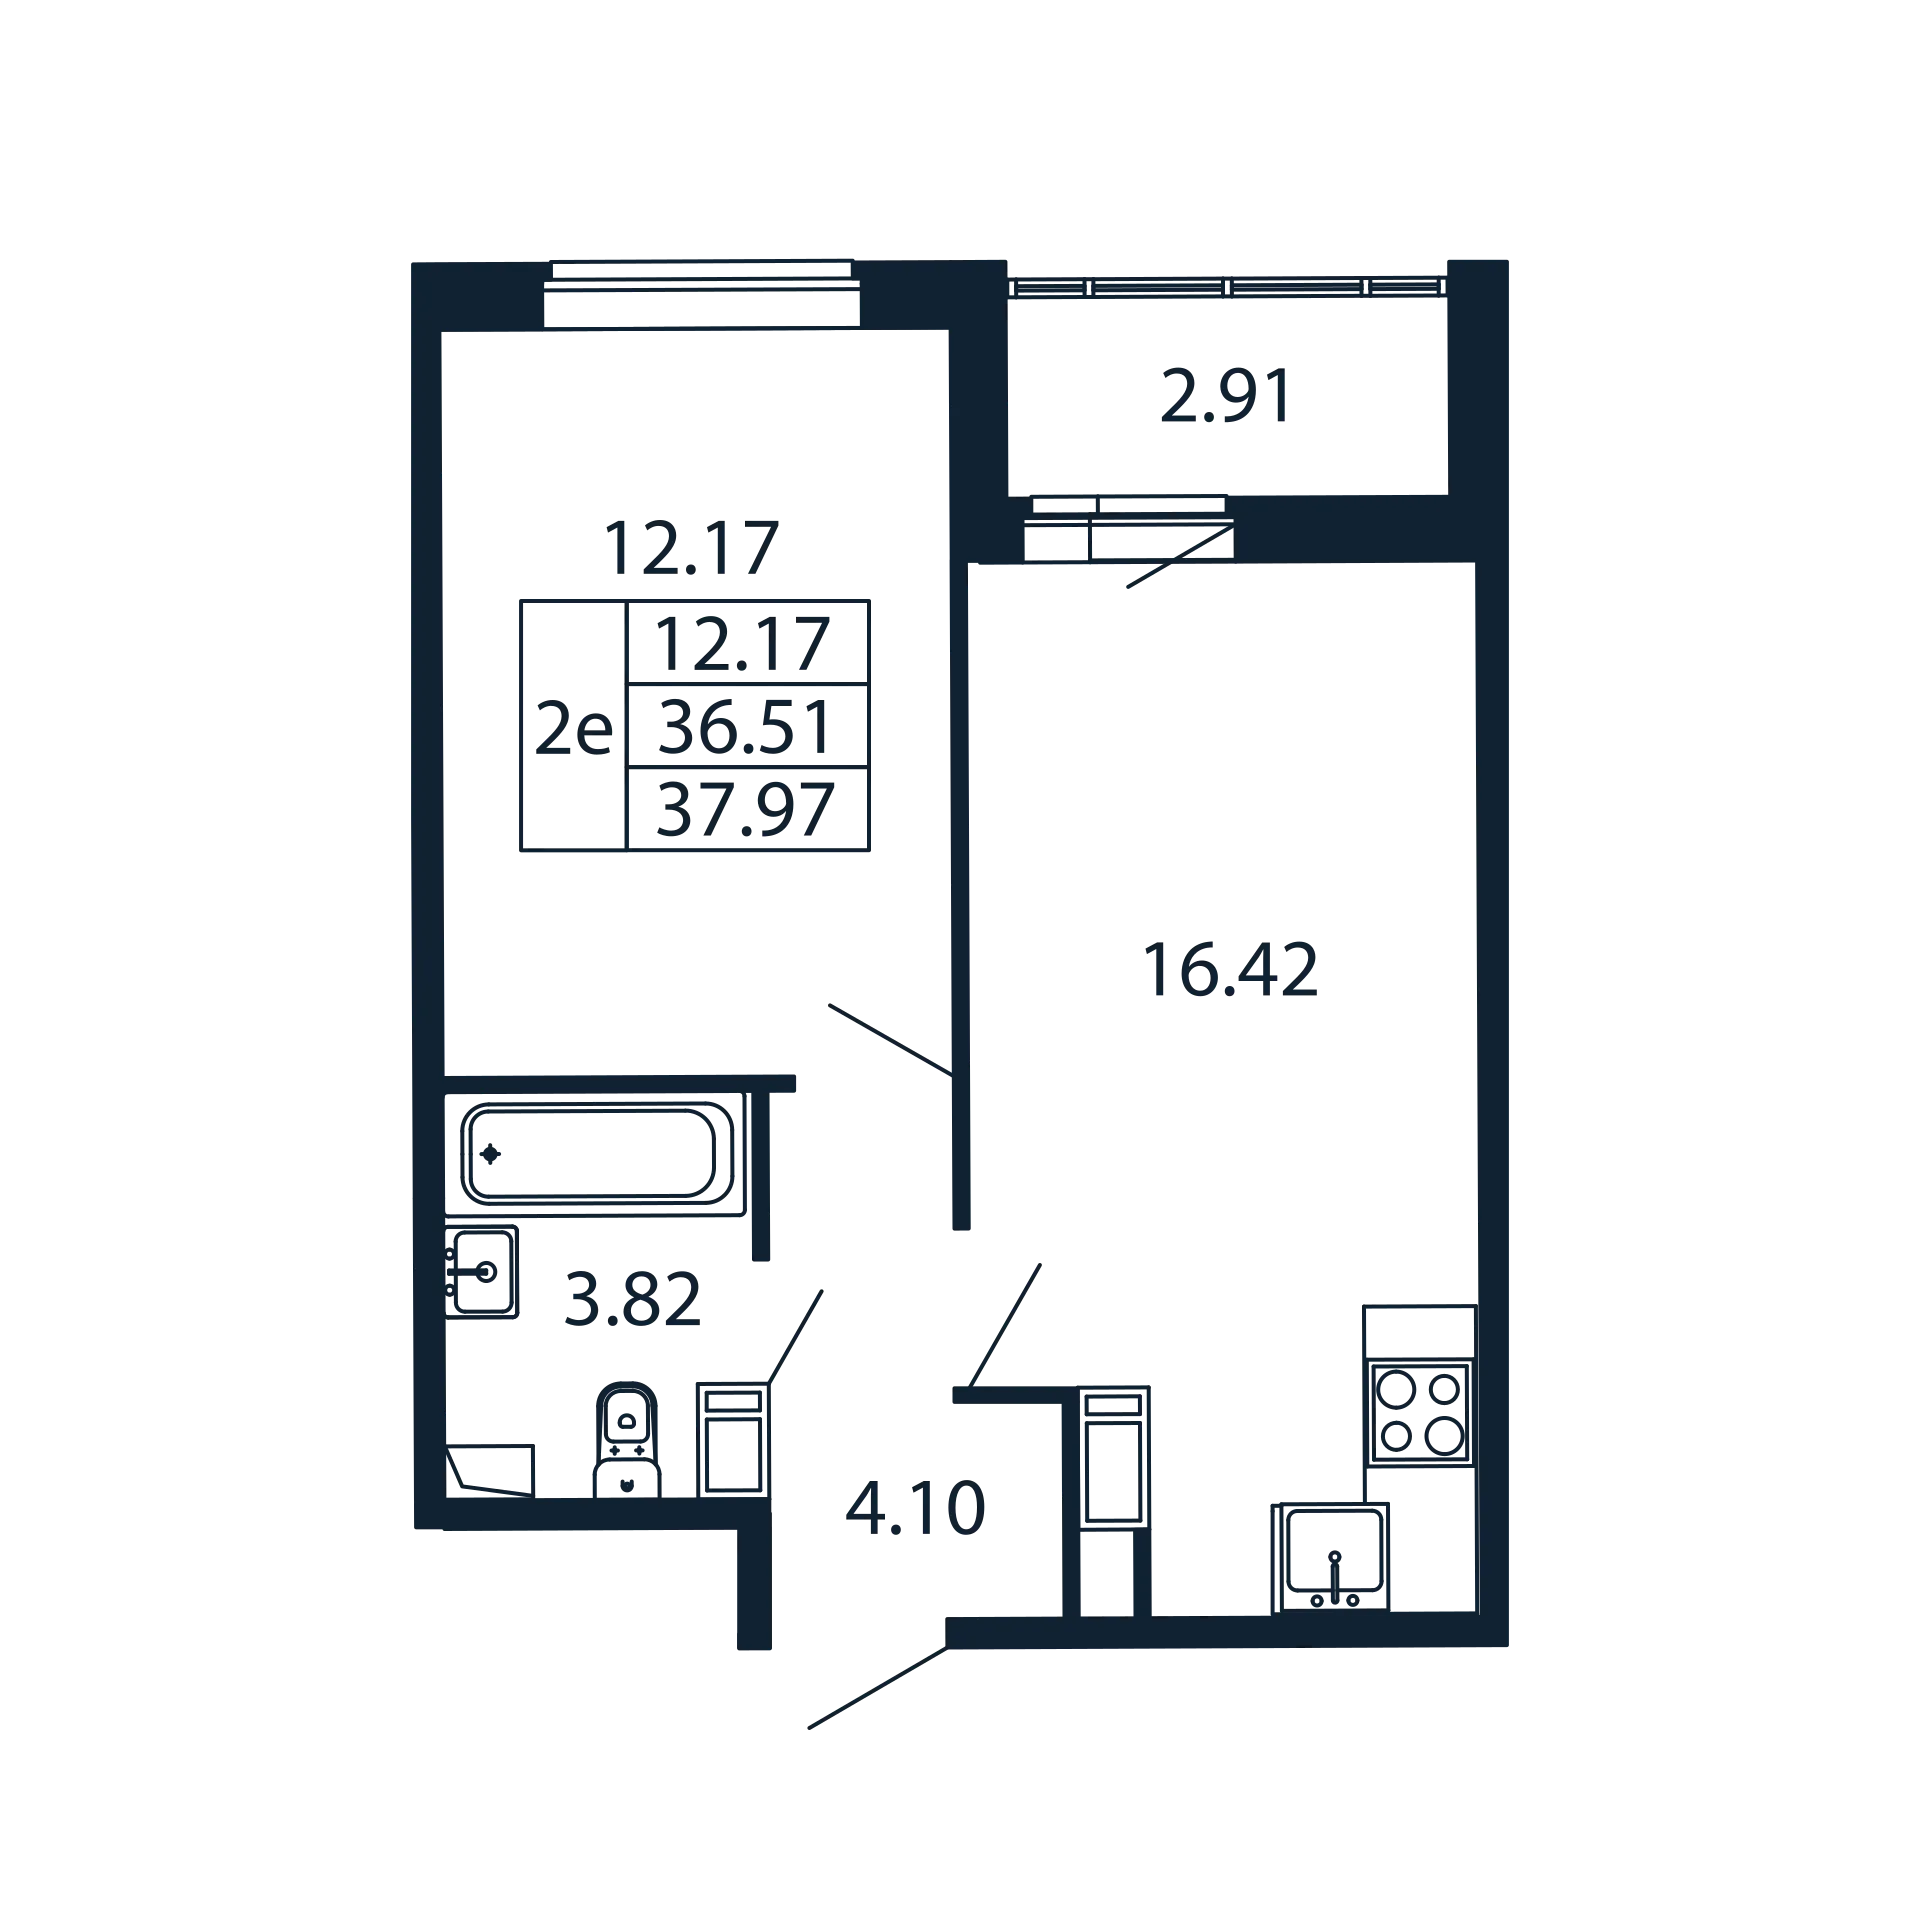 2-комнатная (Евро) квартира, 36.51 м² в ЖК "Полис ЛАВрики" - планировка, фото №1